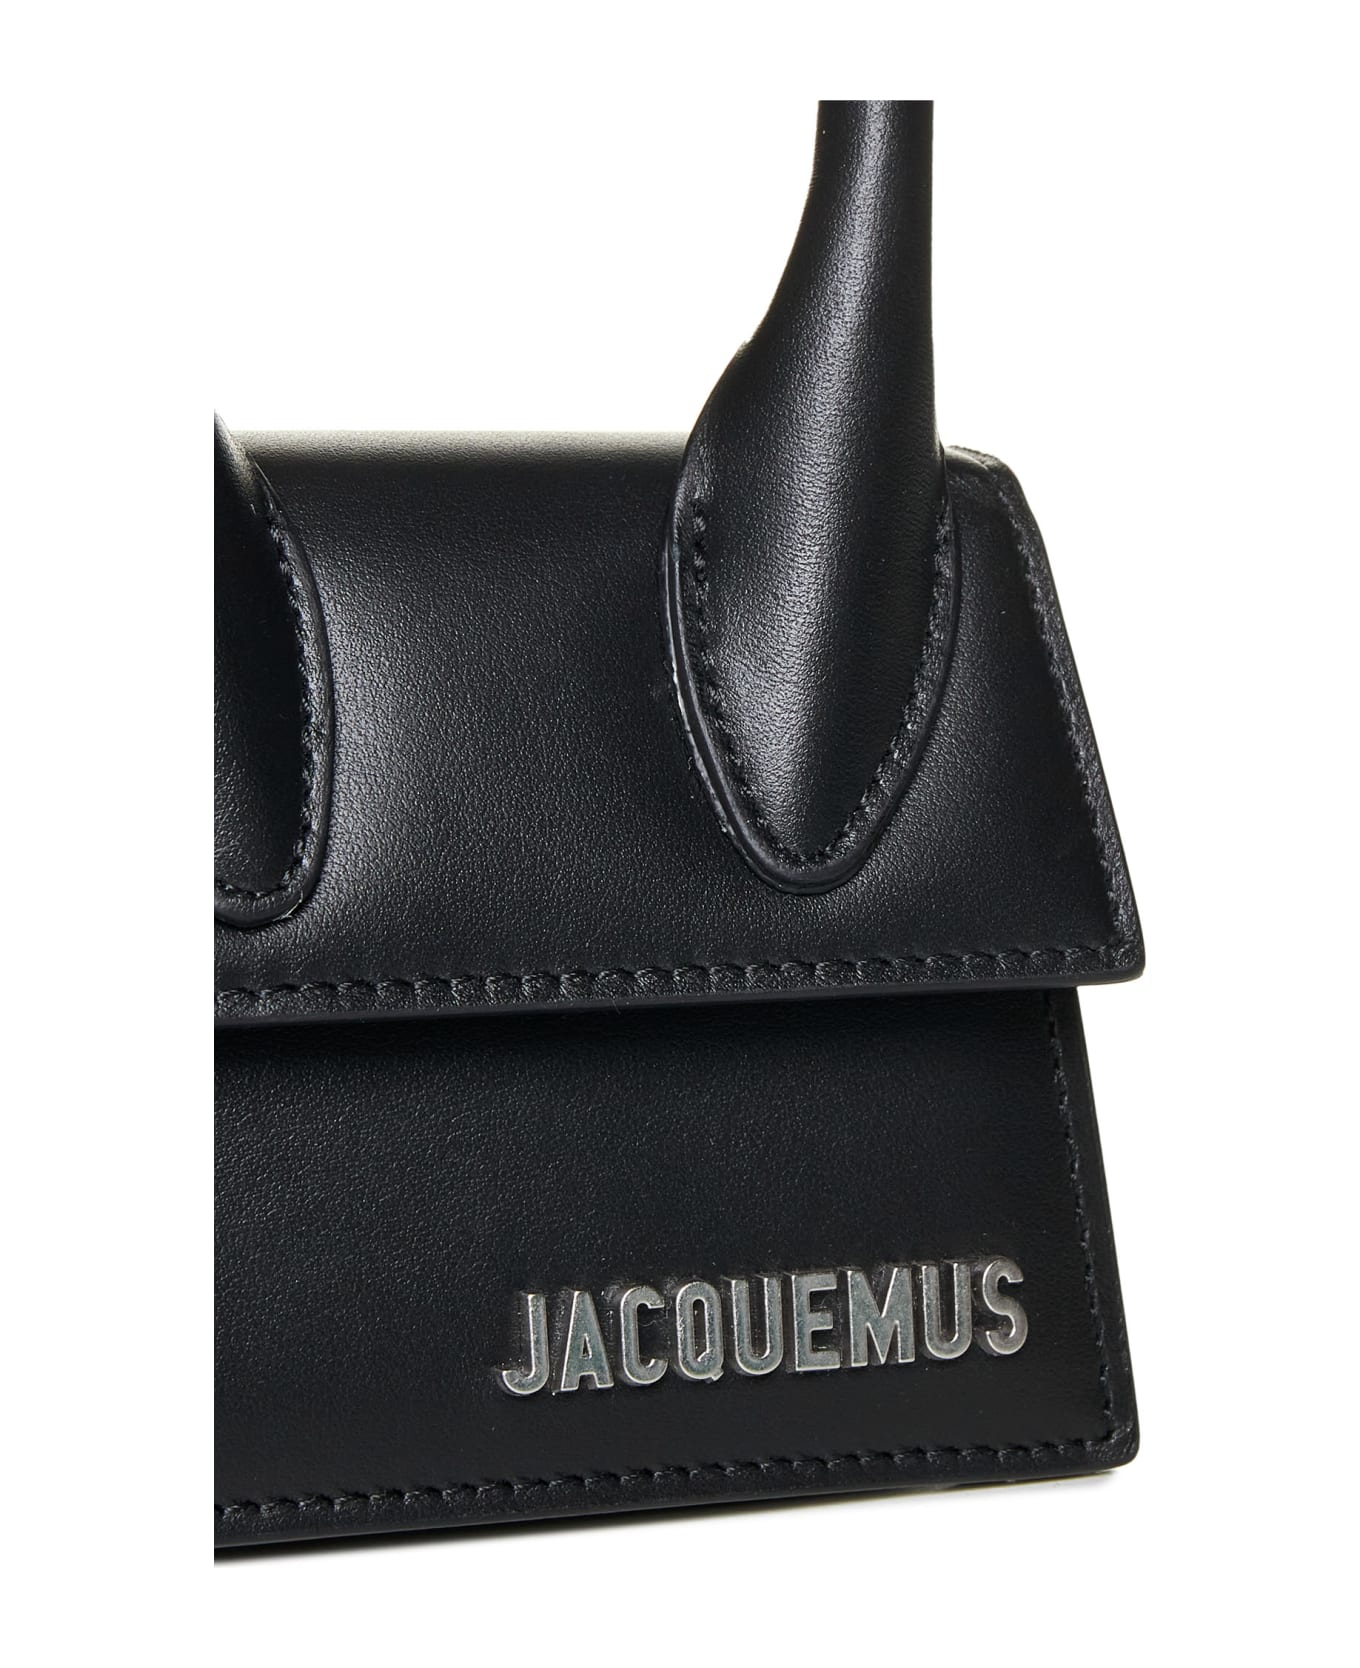 Jacquemus Le Chiquito Homme Bag - Black